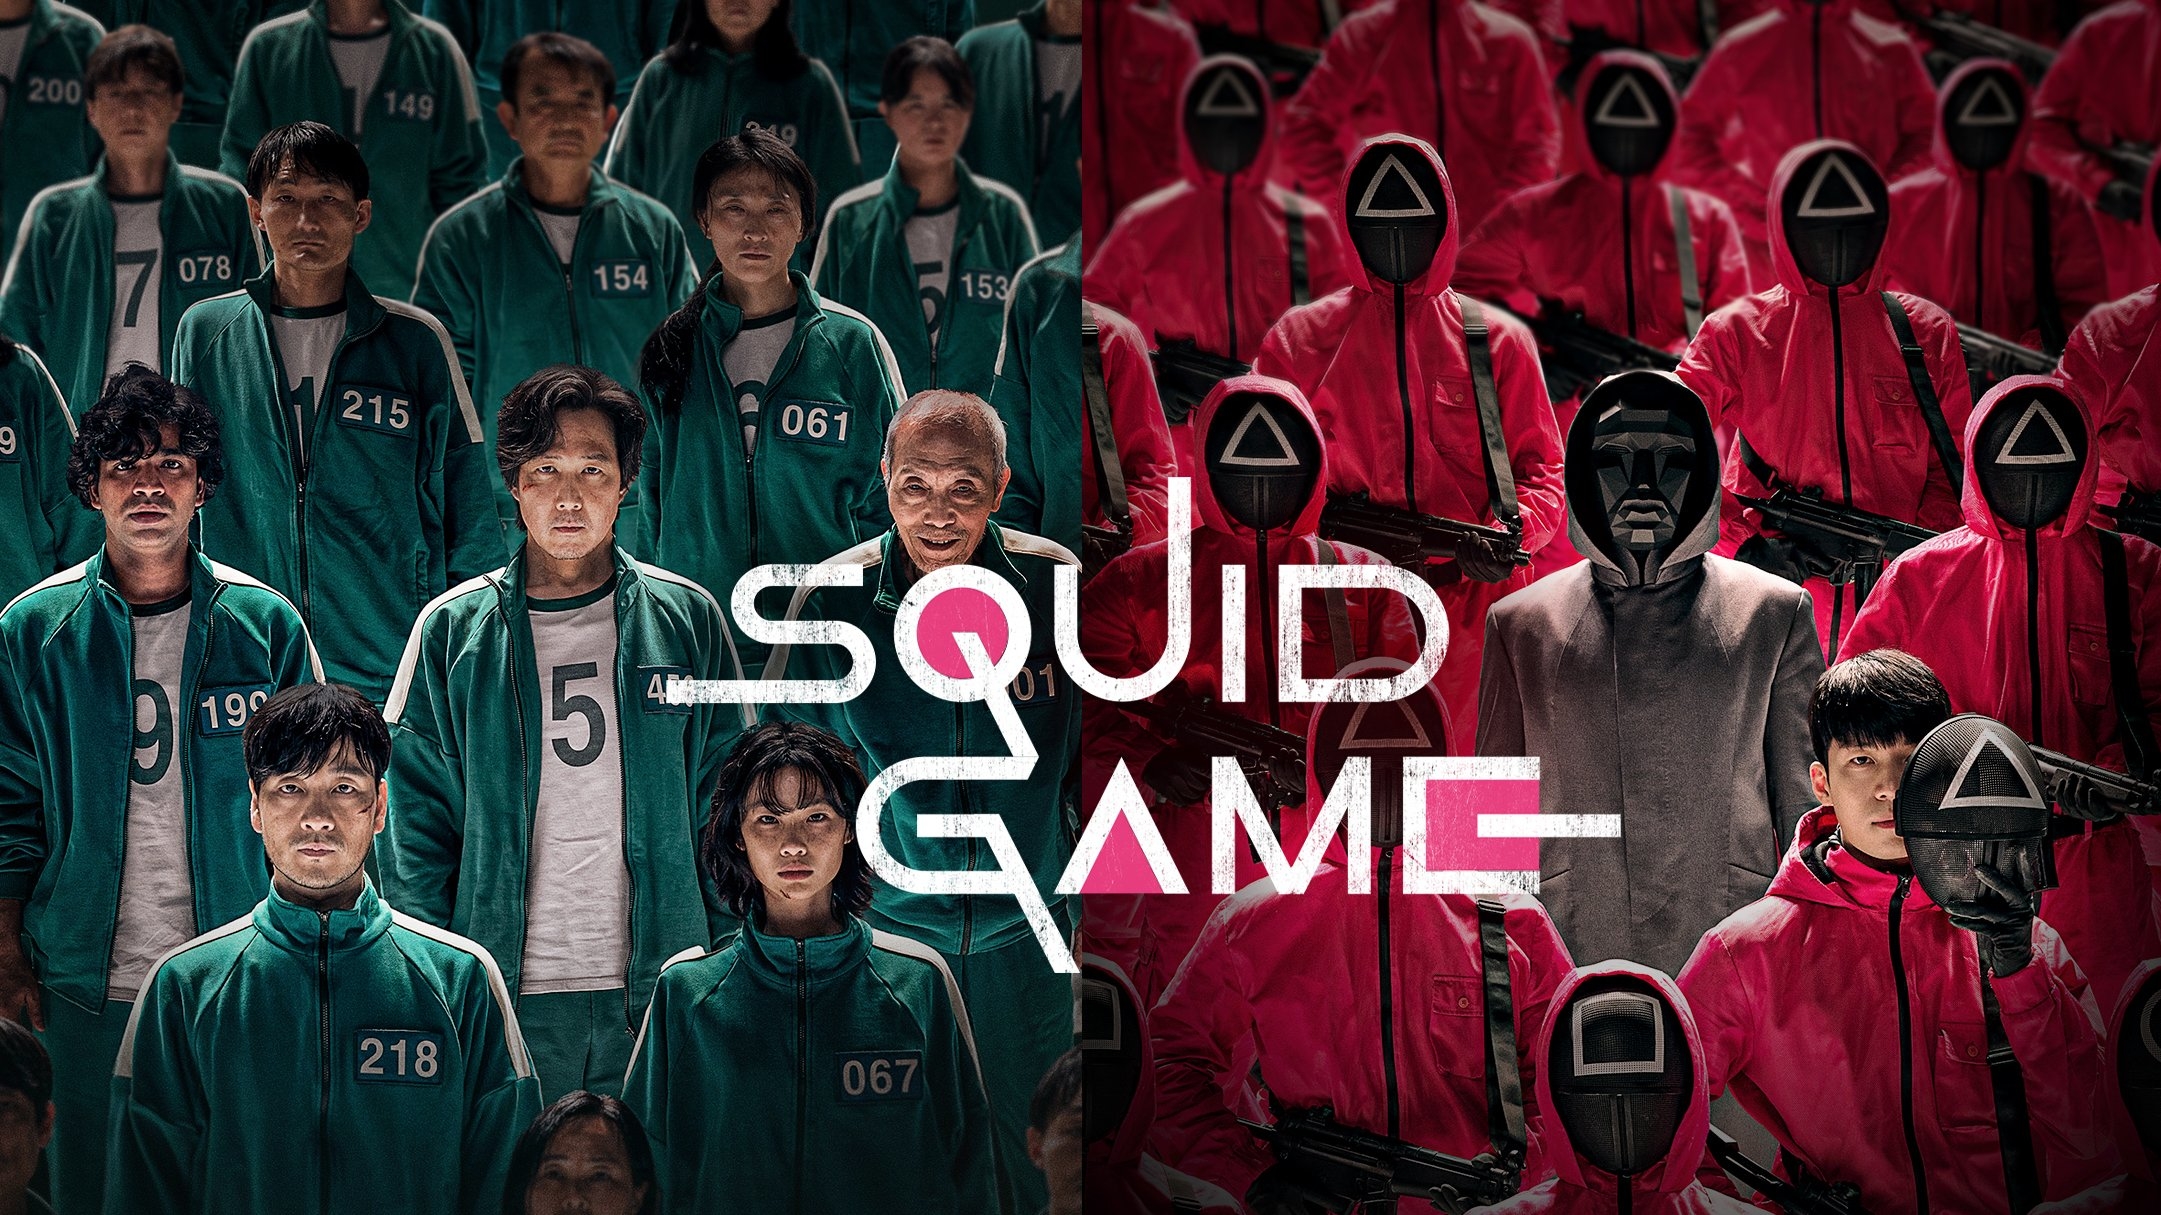 Squid Game Netflix Wallpaper Hd Best Games Walkthrough